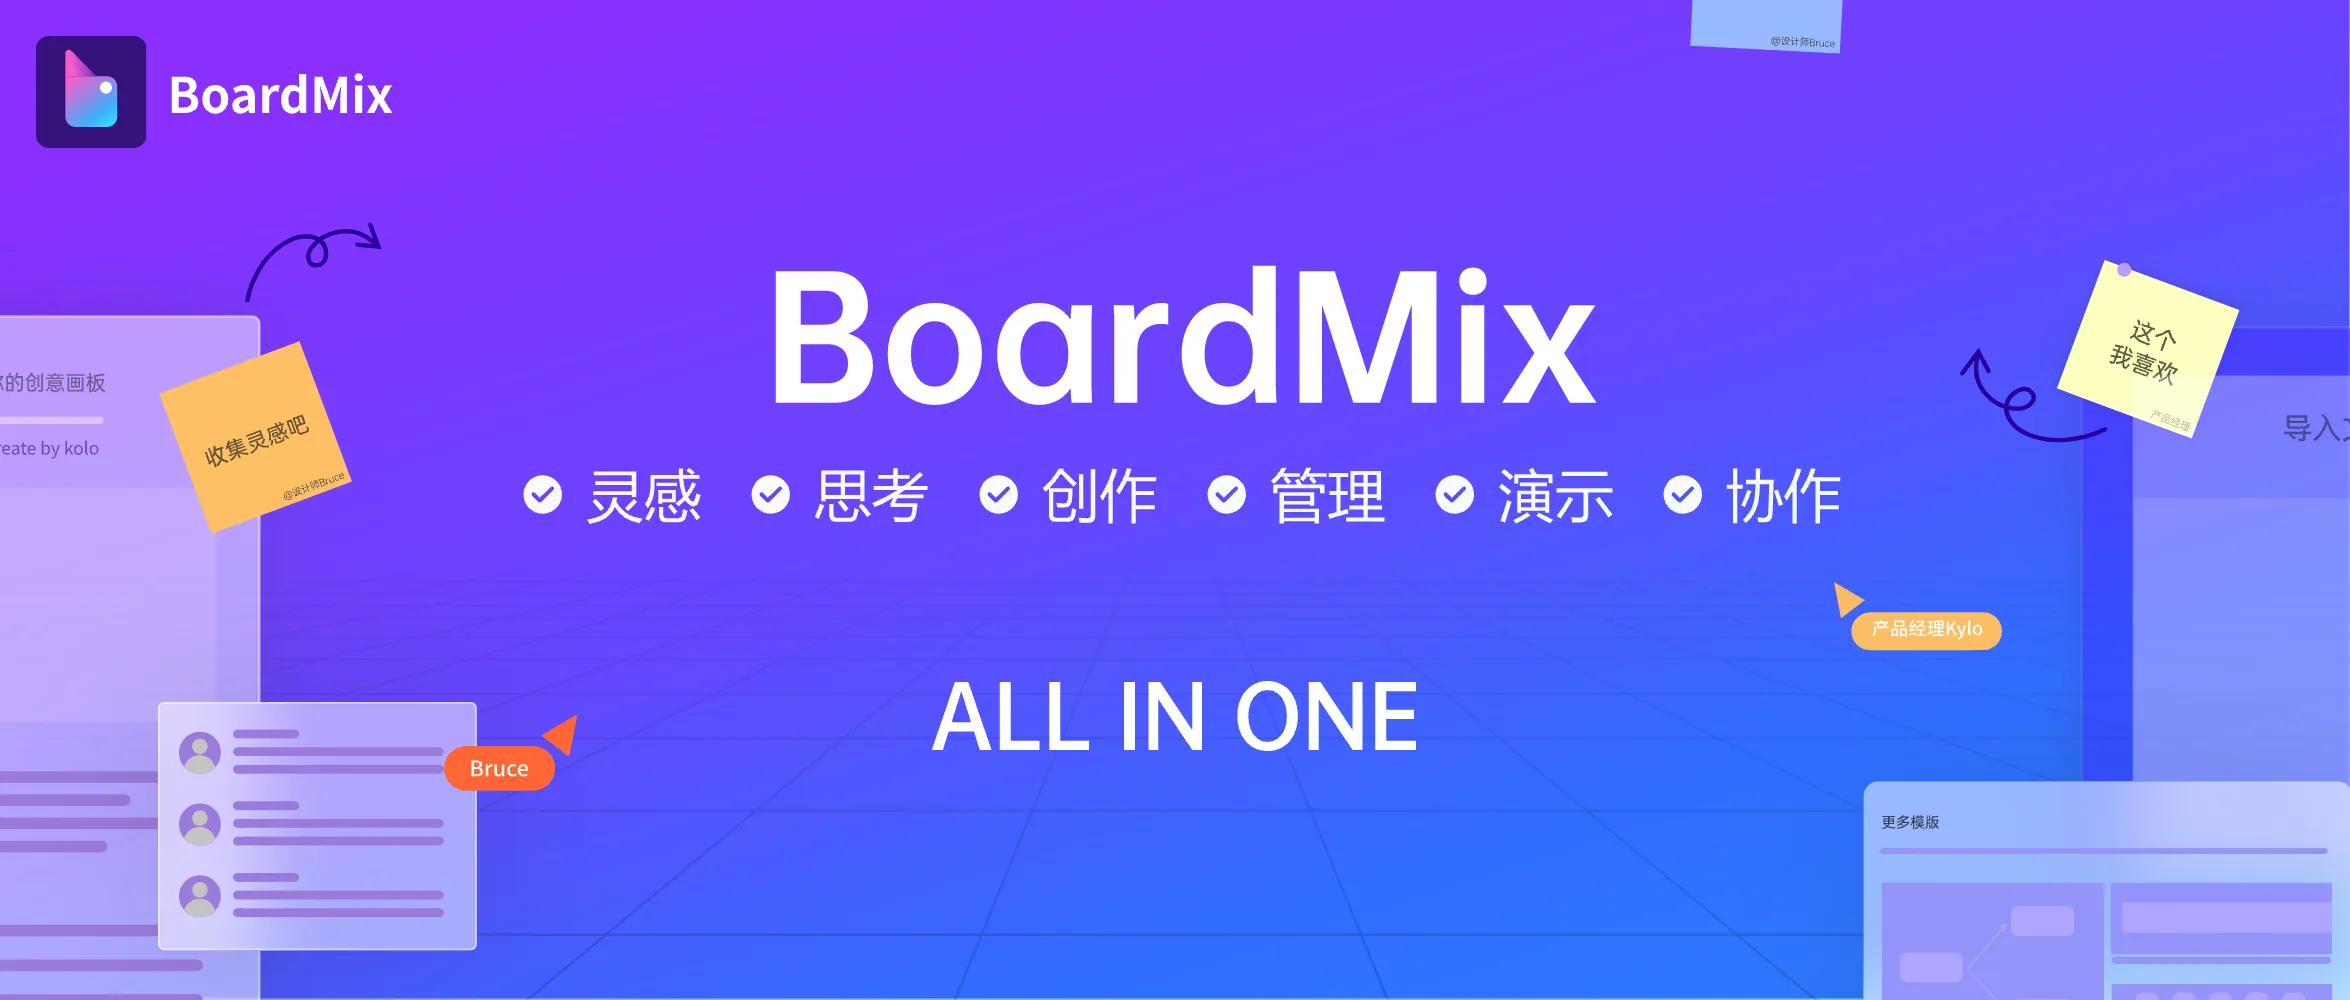 AI智能写作 博思白板boardmix：一款All-in-one的在线白板软件，助力高效远程办公！ - SOHUB-SOHUB